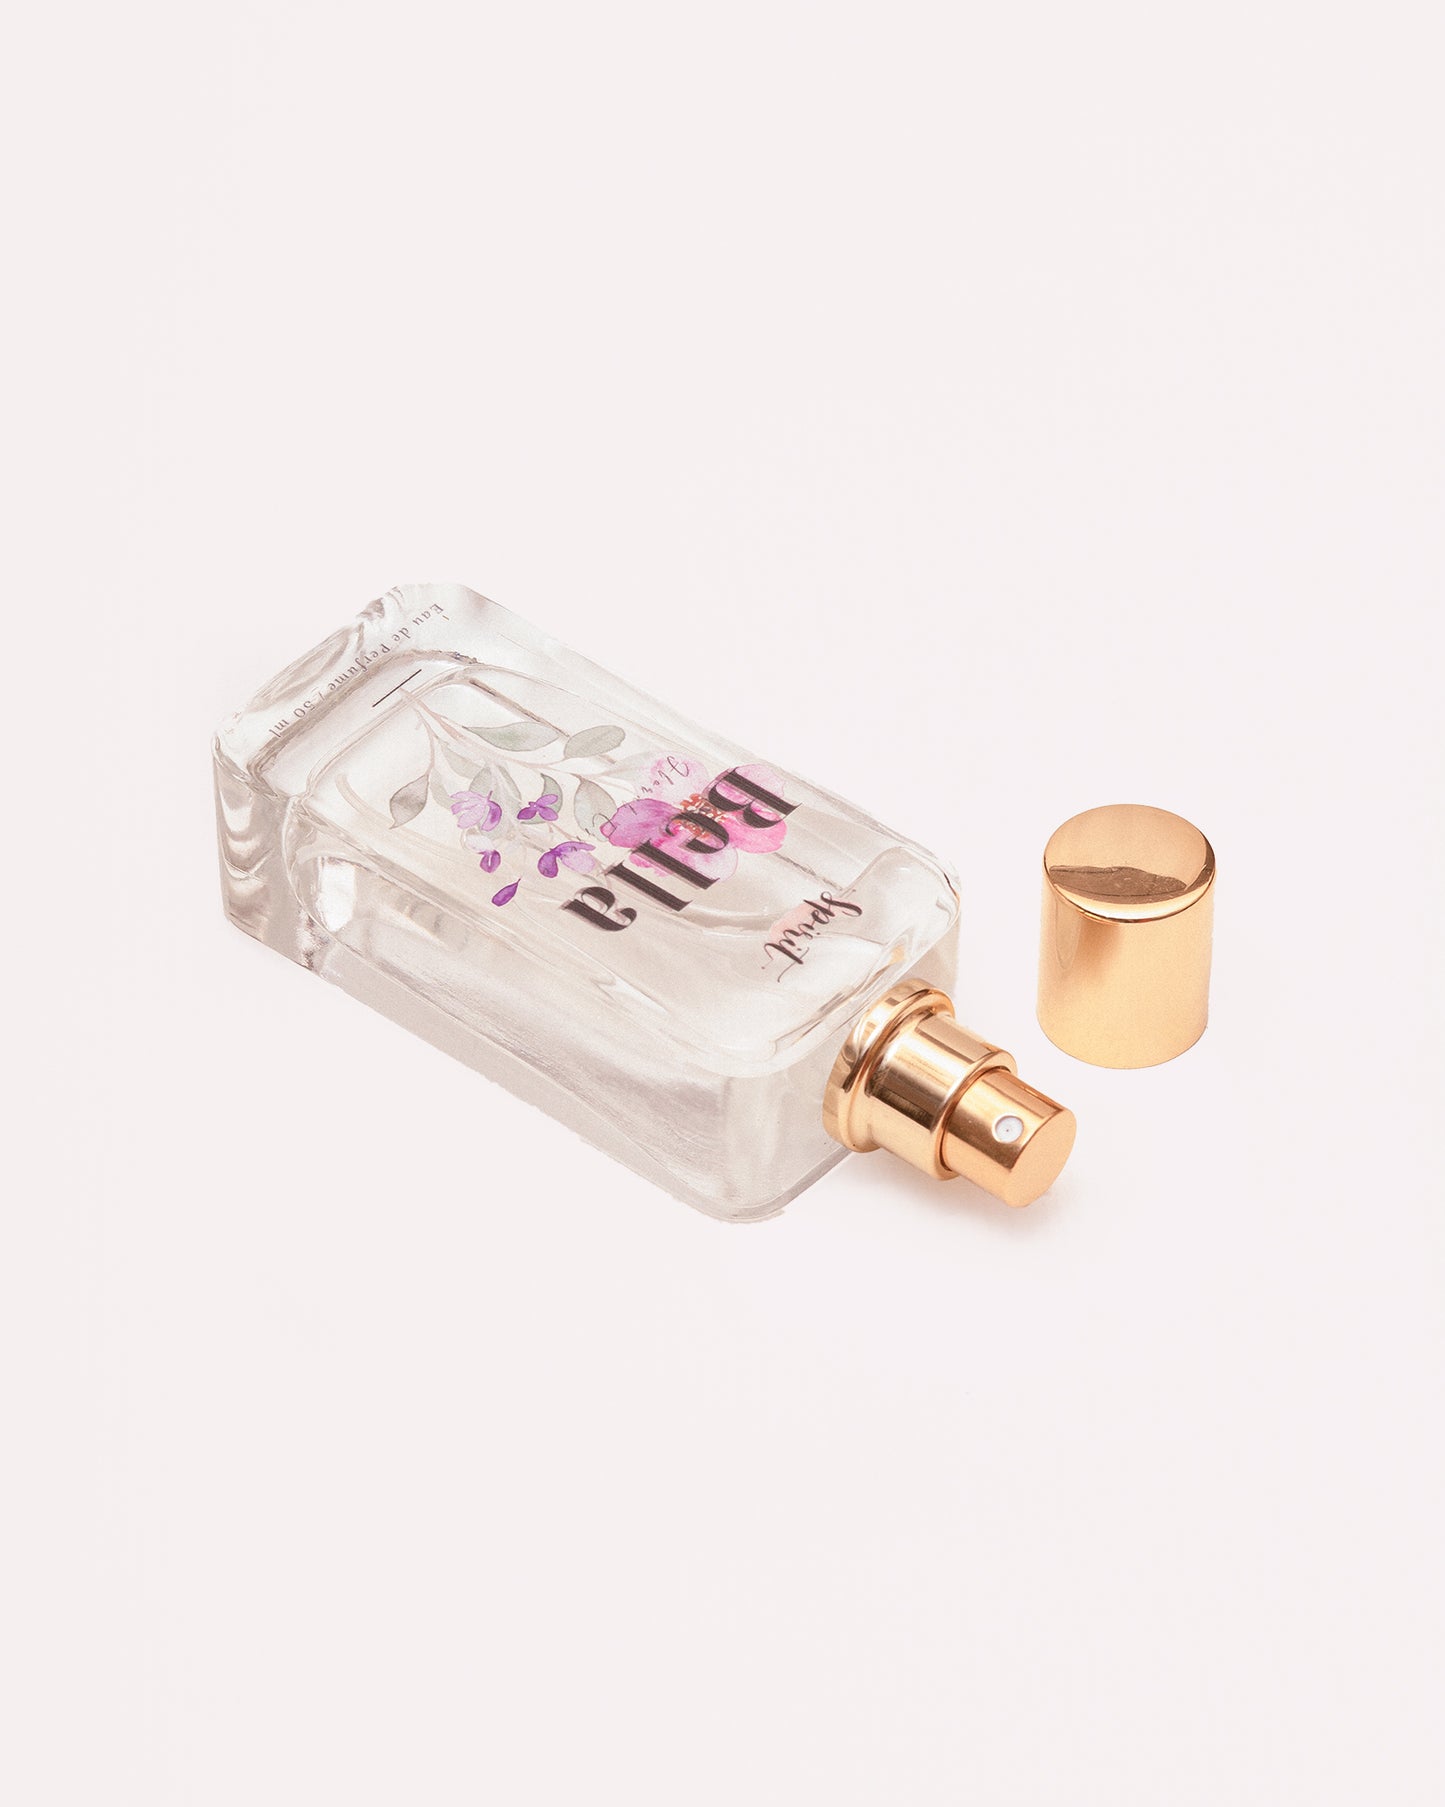 Bella for Women - Feminine Fragrances by Spirit